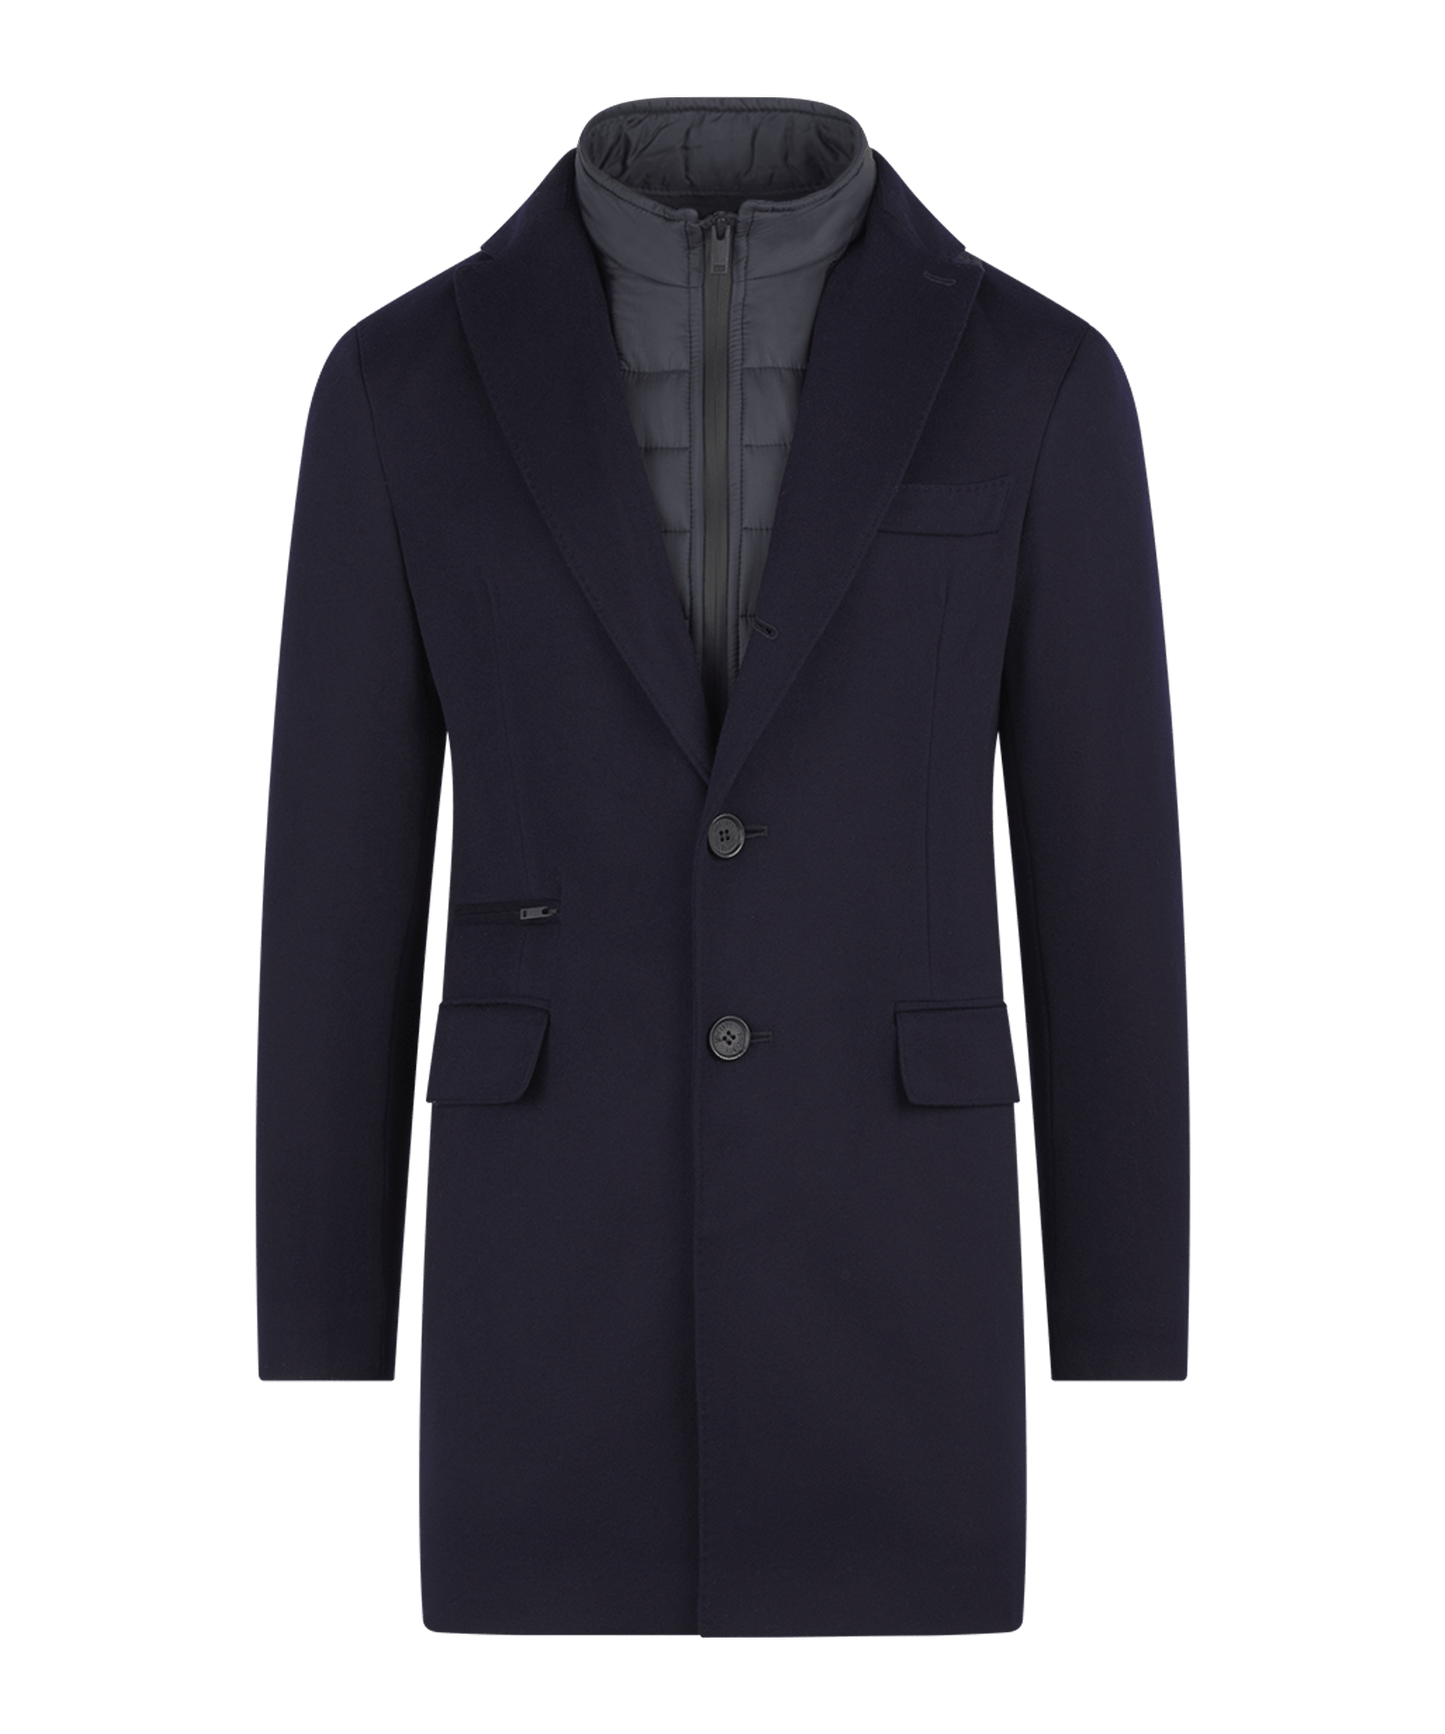 The Coat by Loro Piana navy wol